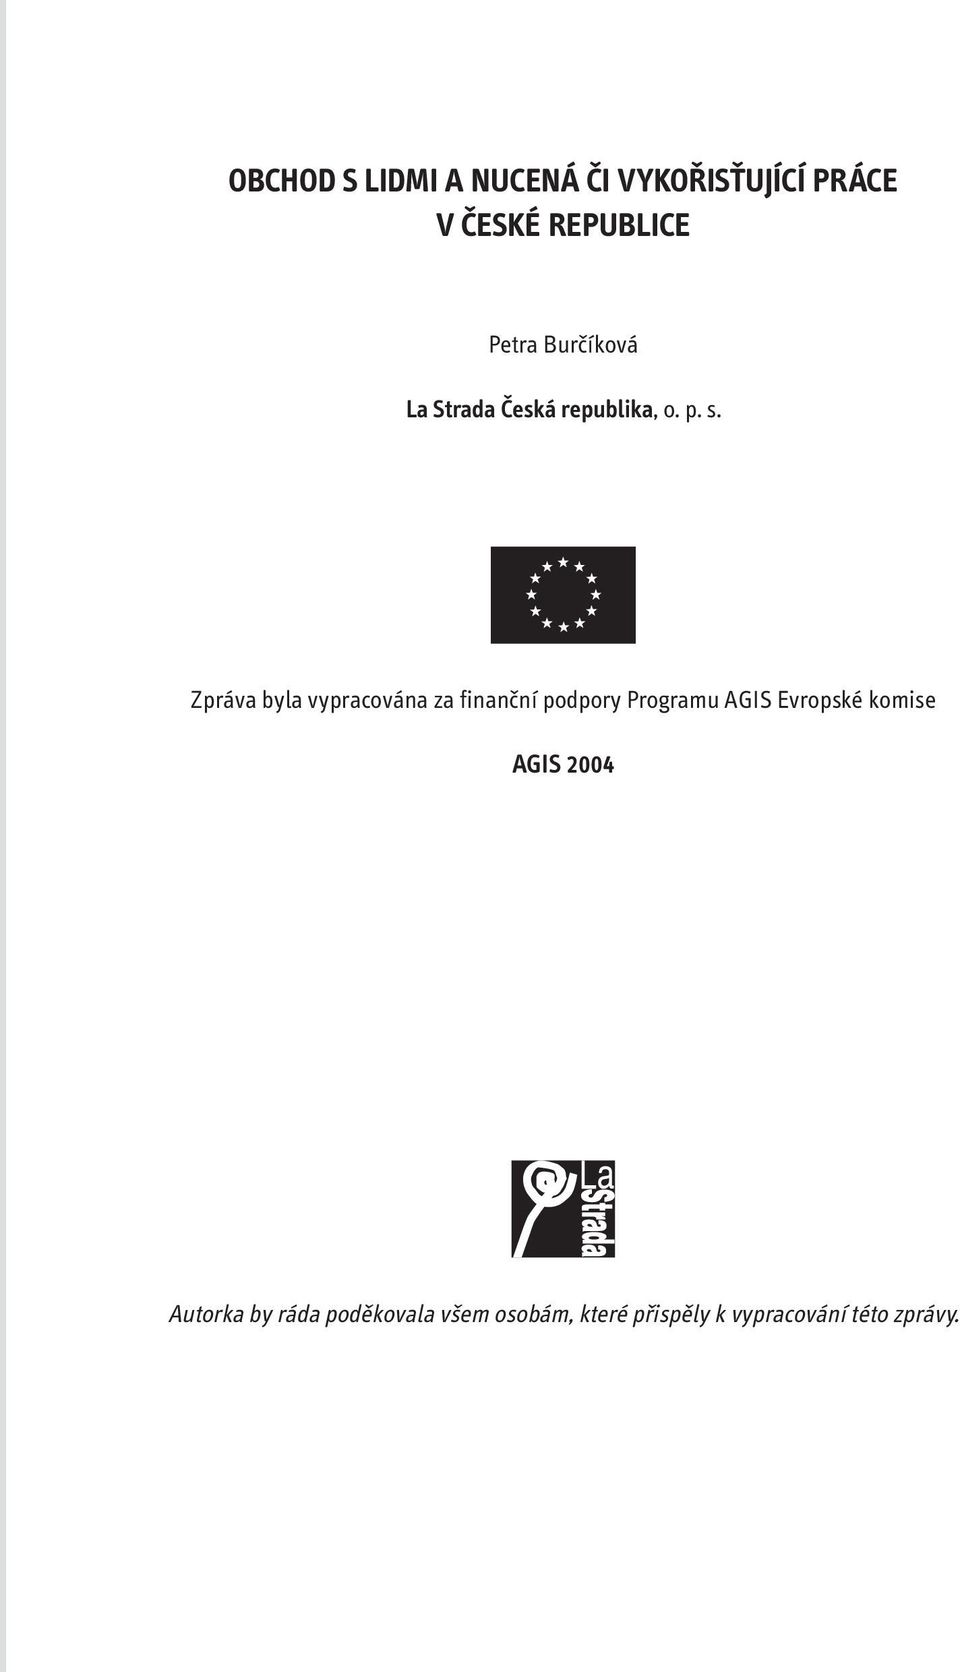 Zpráva byla vypracována za finanční podpory Programu AGIS Evropské